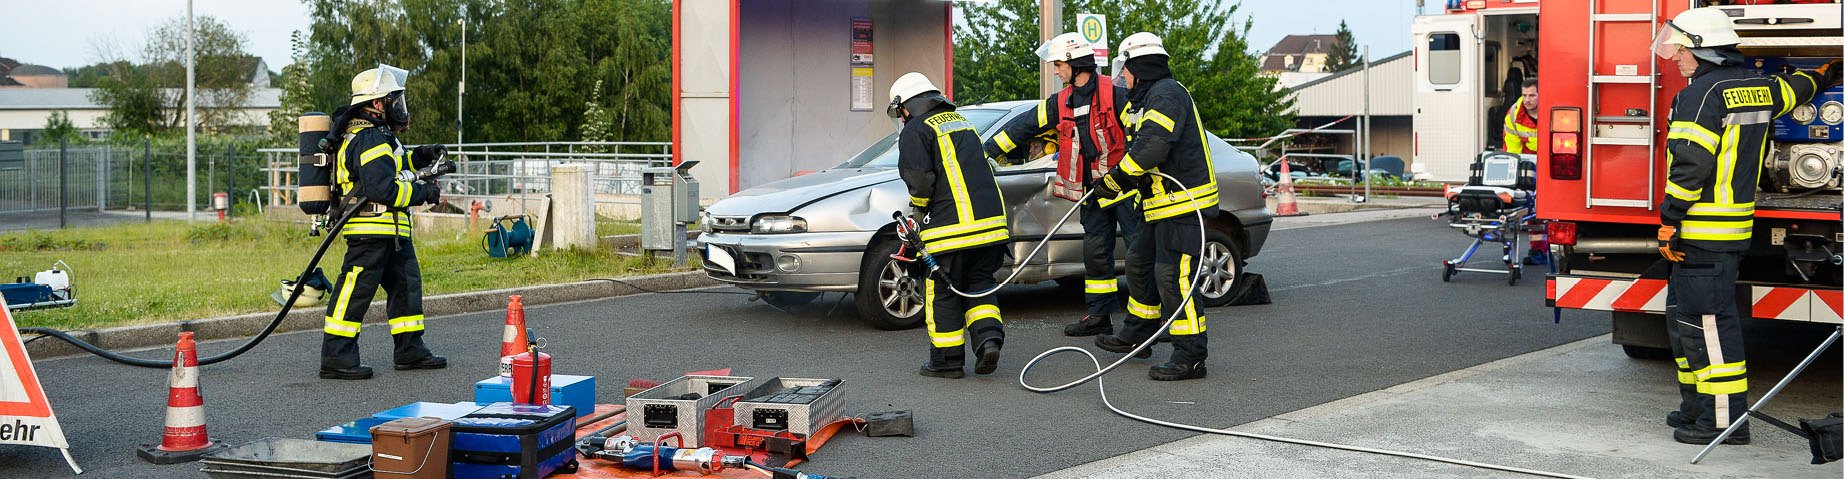 Die Freiwillige Feuerwehr bei einem Unfallschaden.